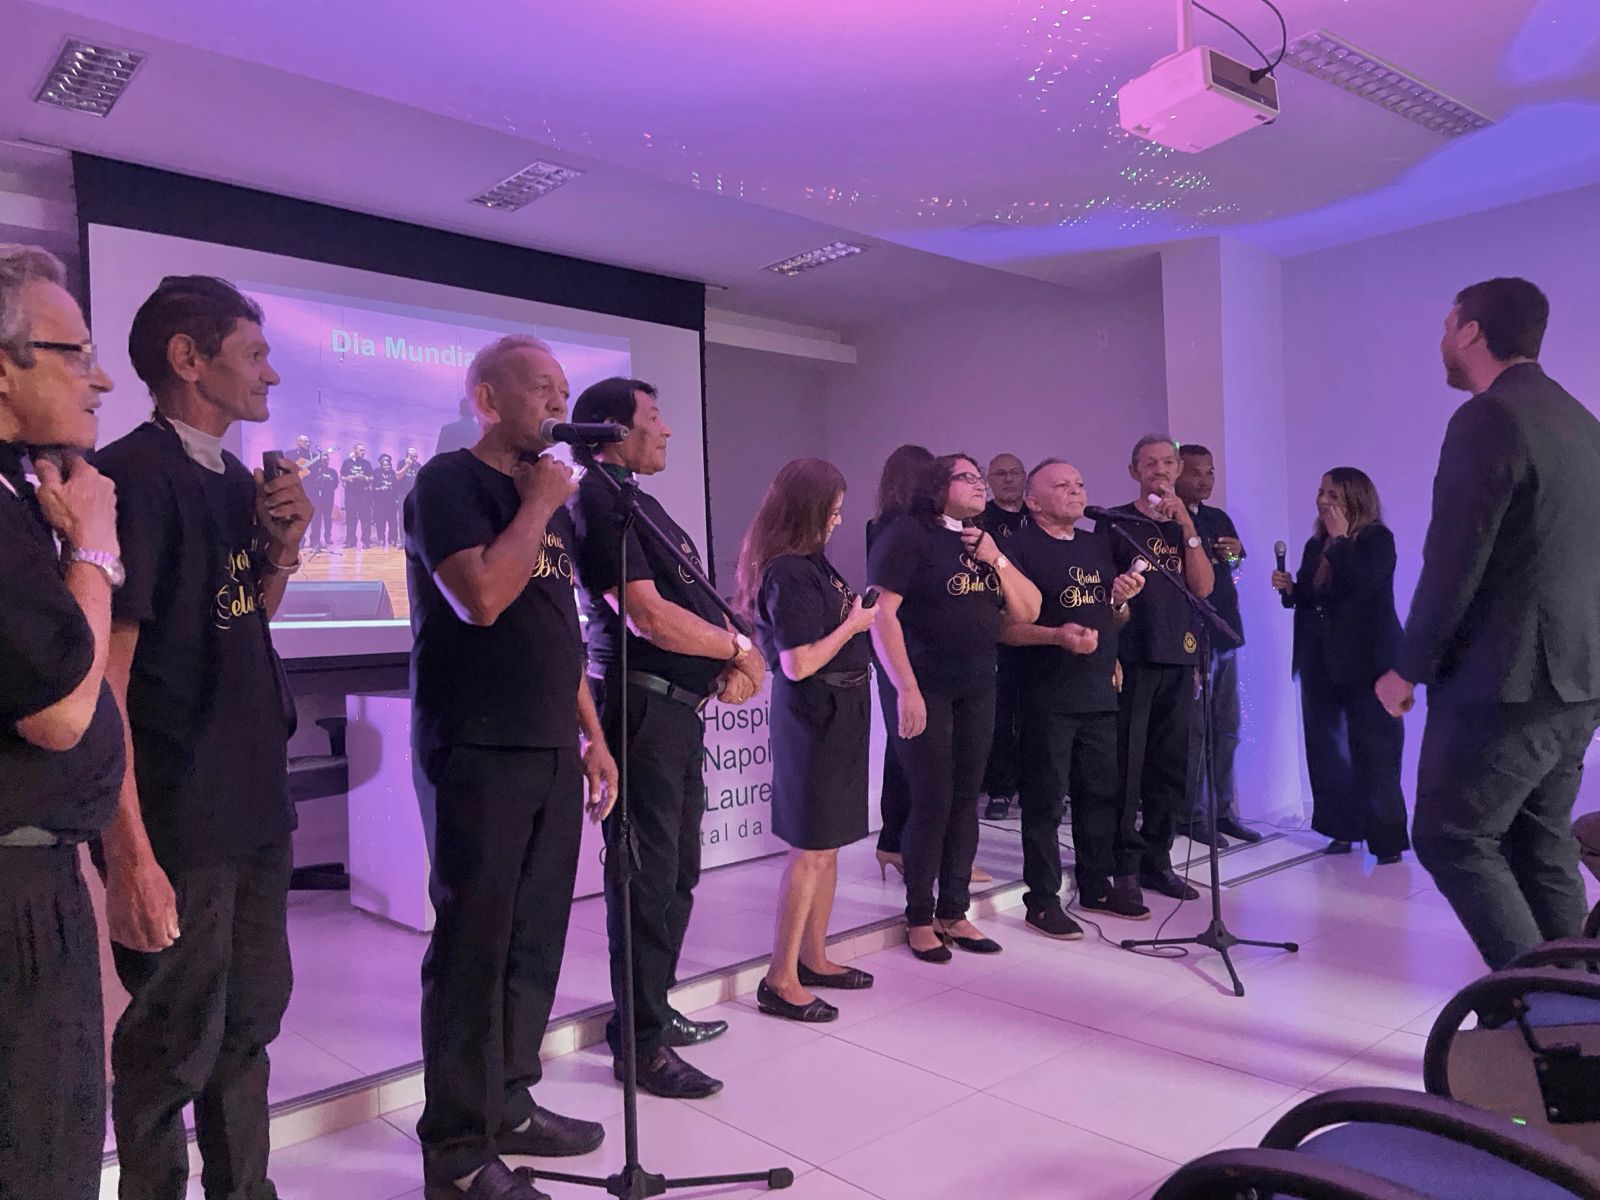 Toda Voz merece Ser Ouvida: Hospital Napoleão Laureano realiza evento para celebrar Dia Mundial da Voz